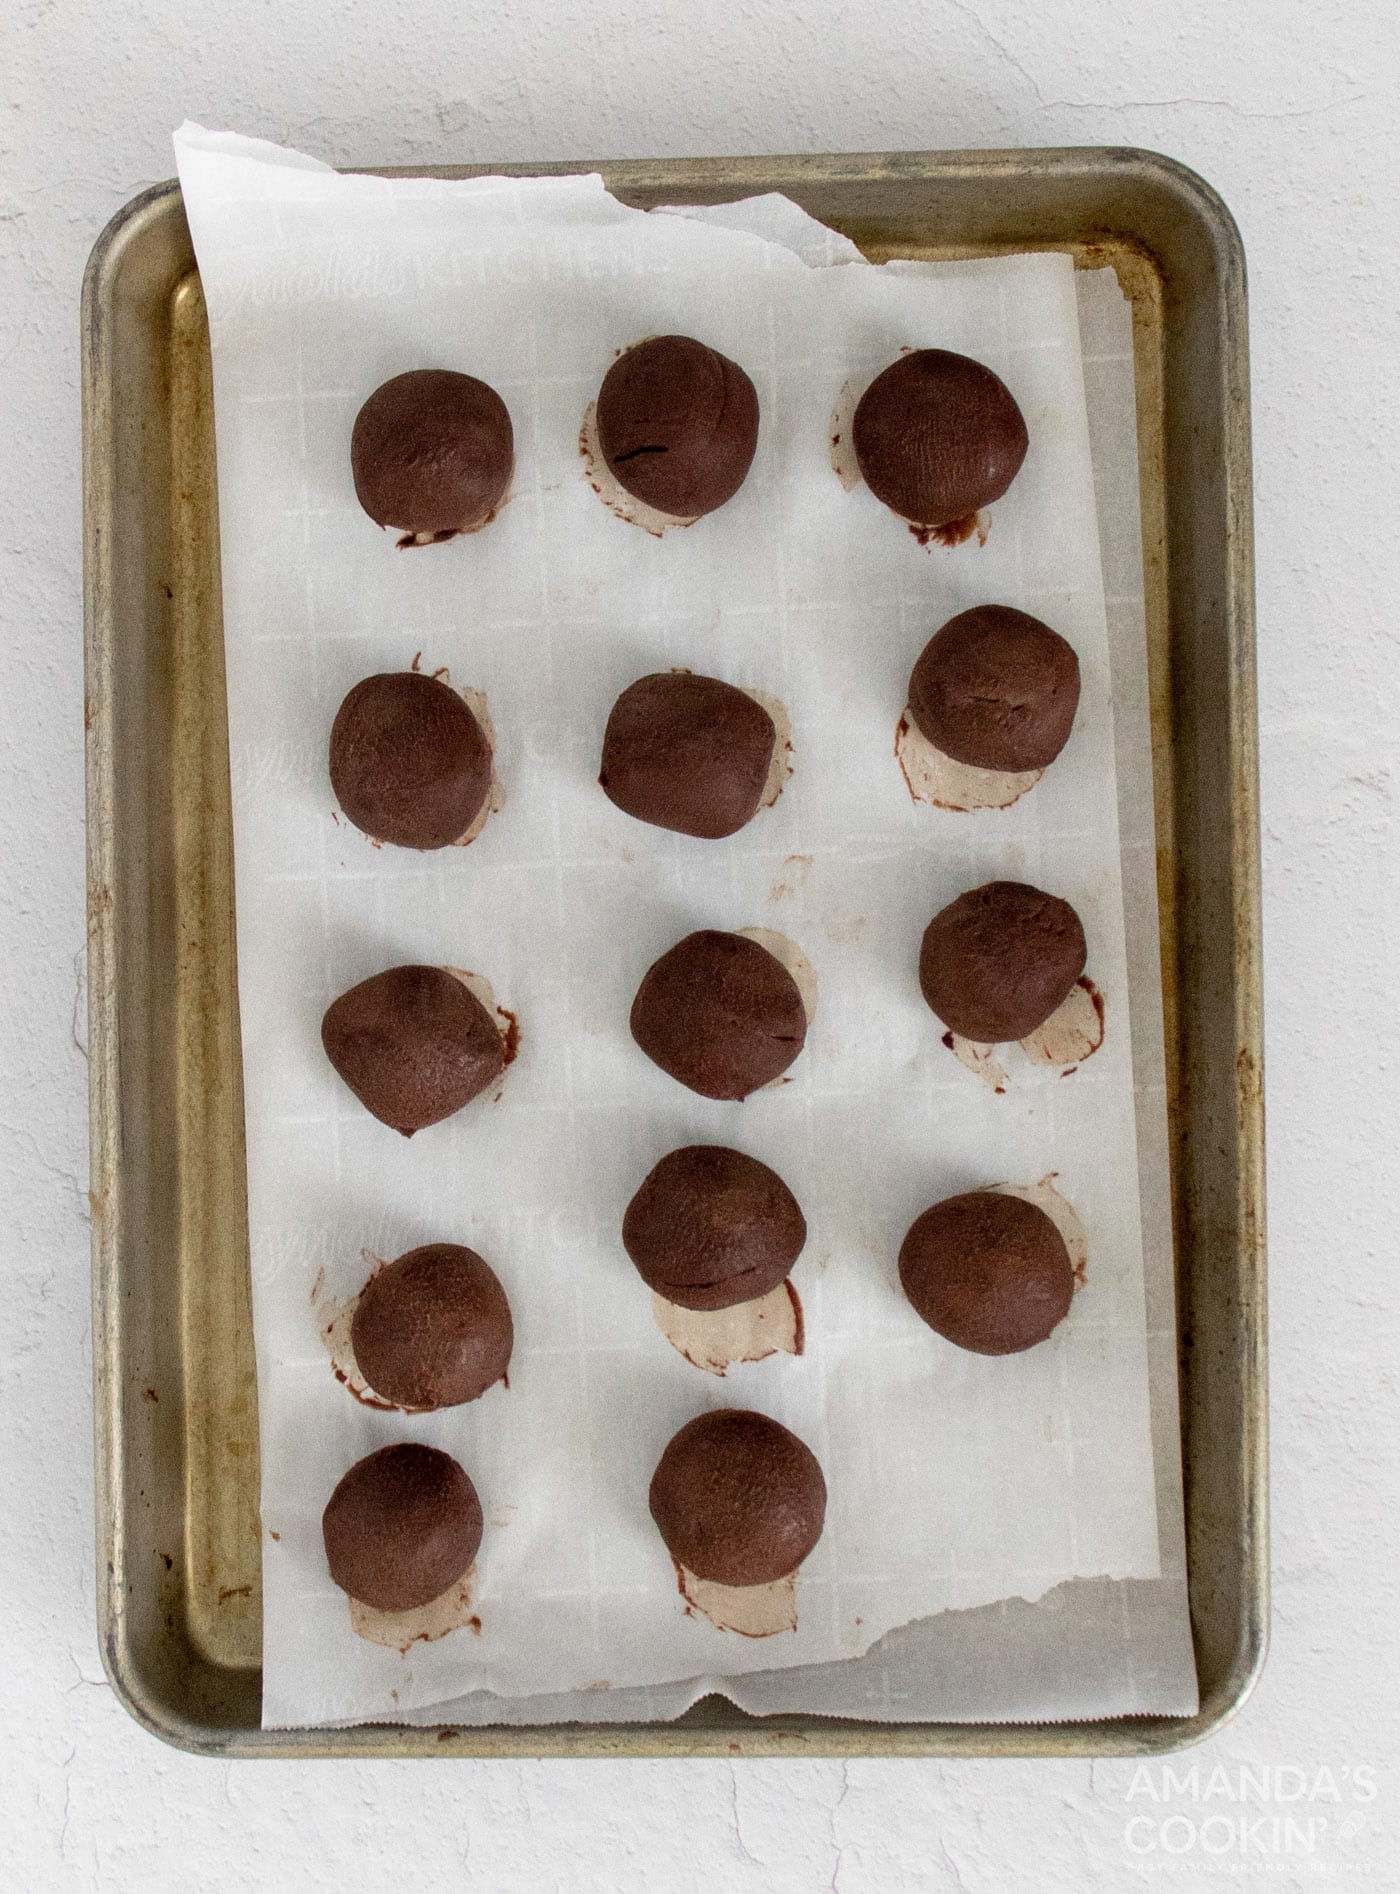 truffles on baking pan